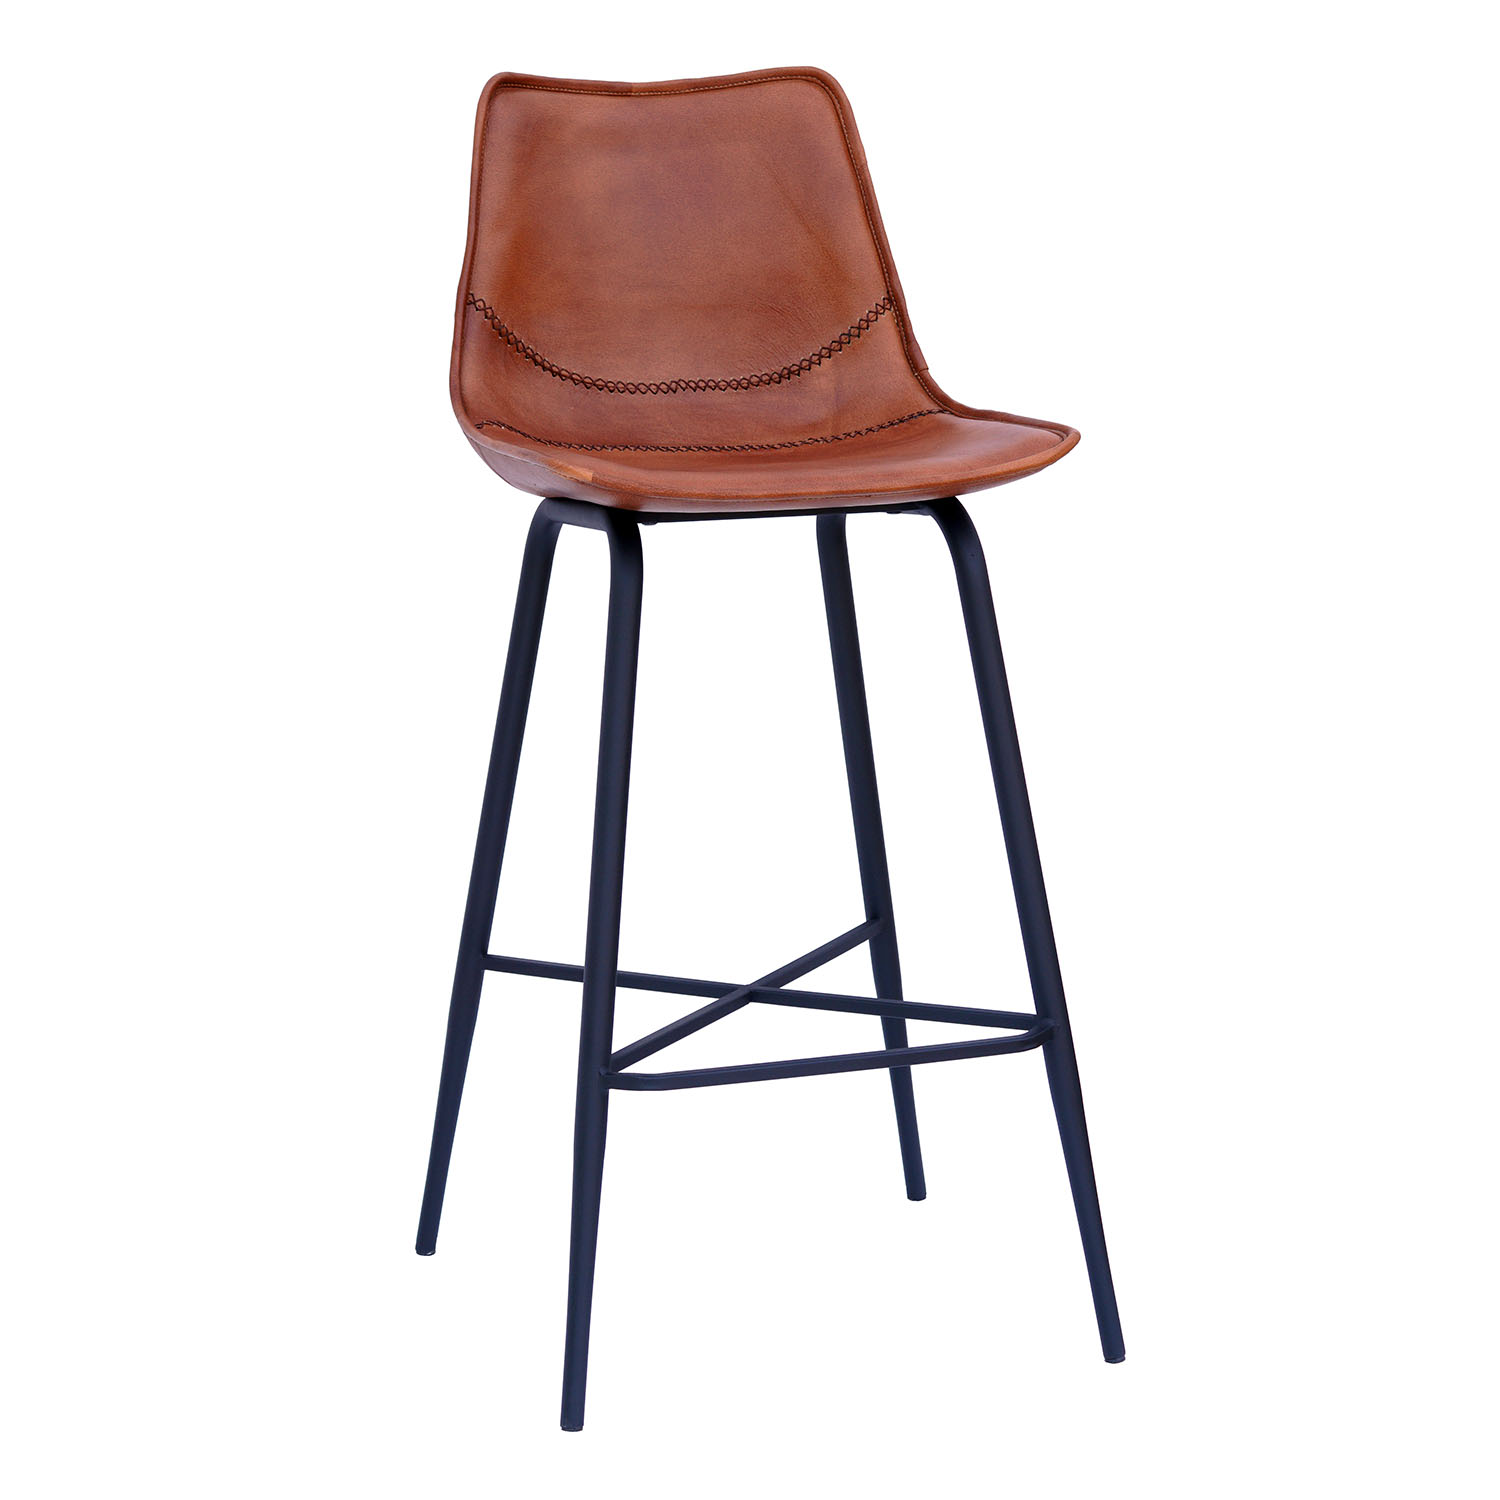 SJÄLSÖ NORDIC barstol, m. ryglæn og fodstøtte - brun læder og sort jern thumbnail